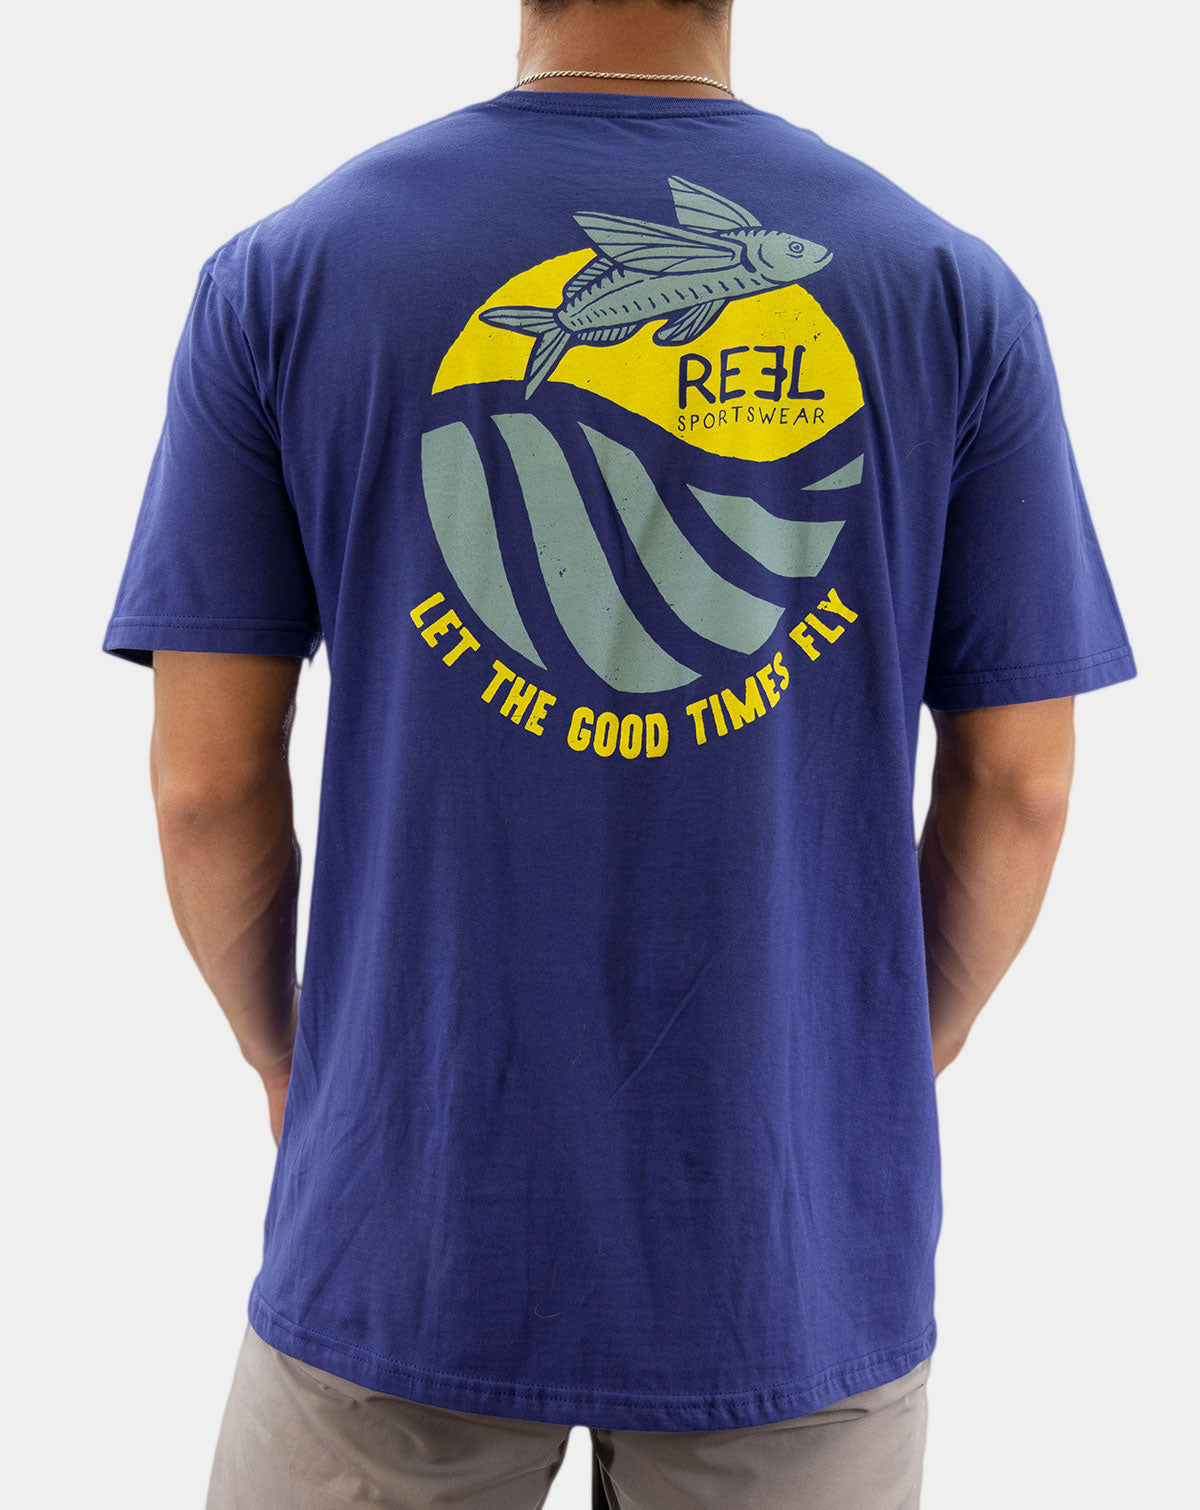 Flyer - Reel Sportswear Fishing T-shirt